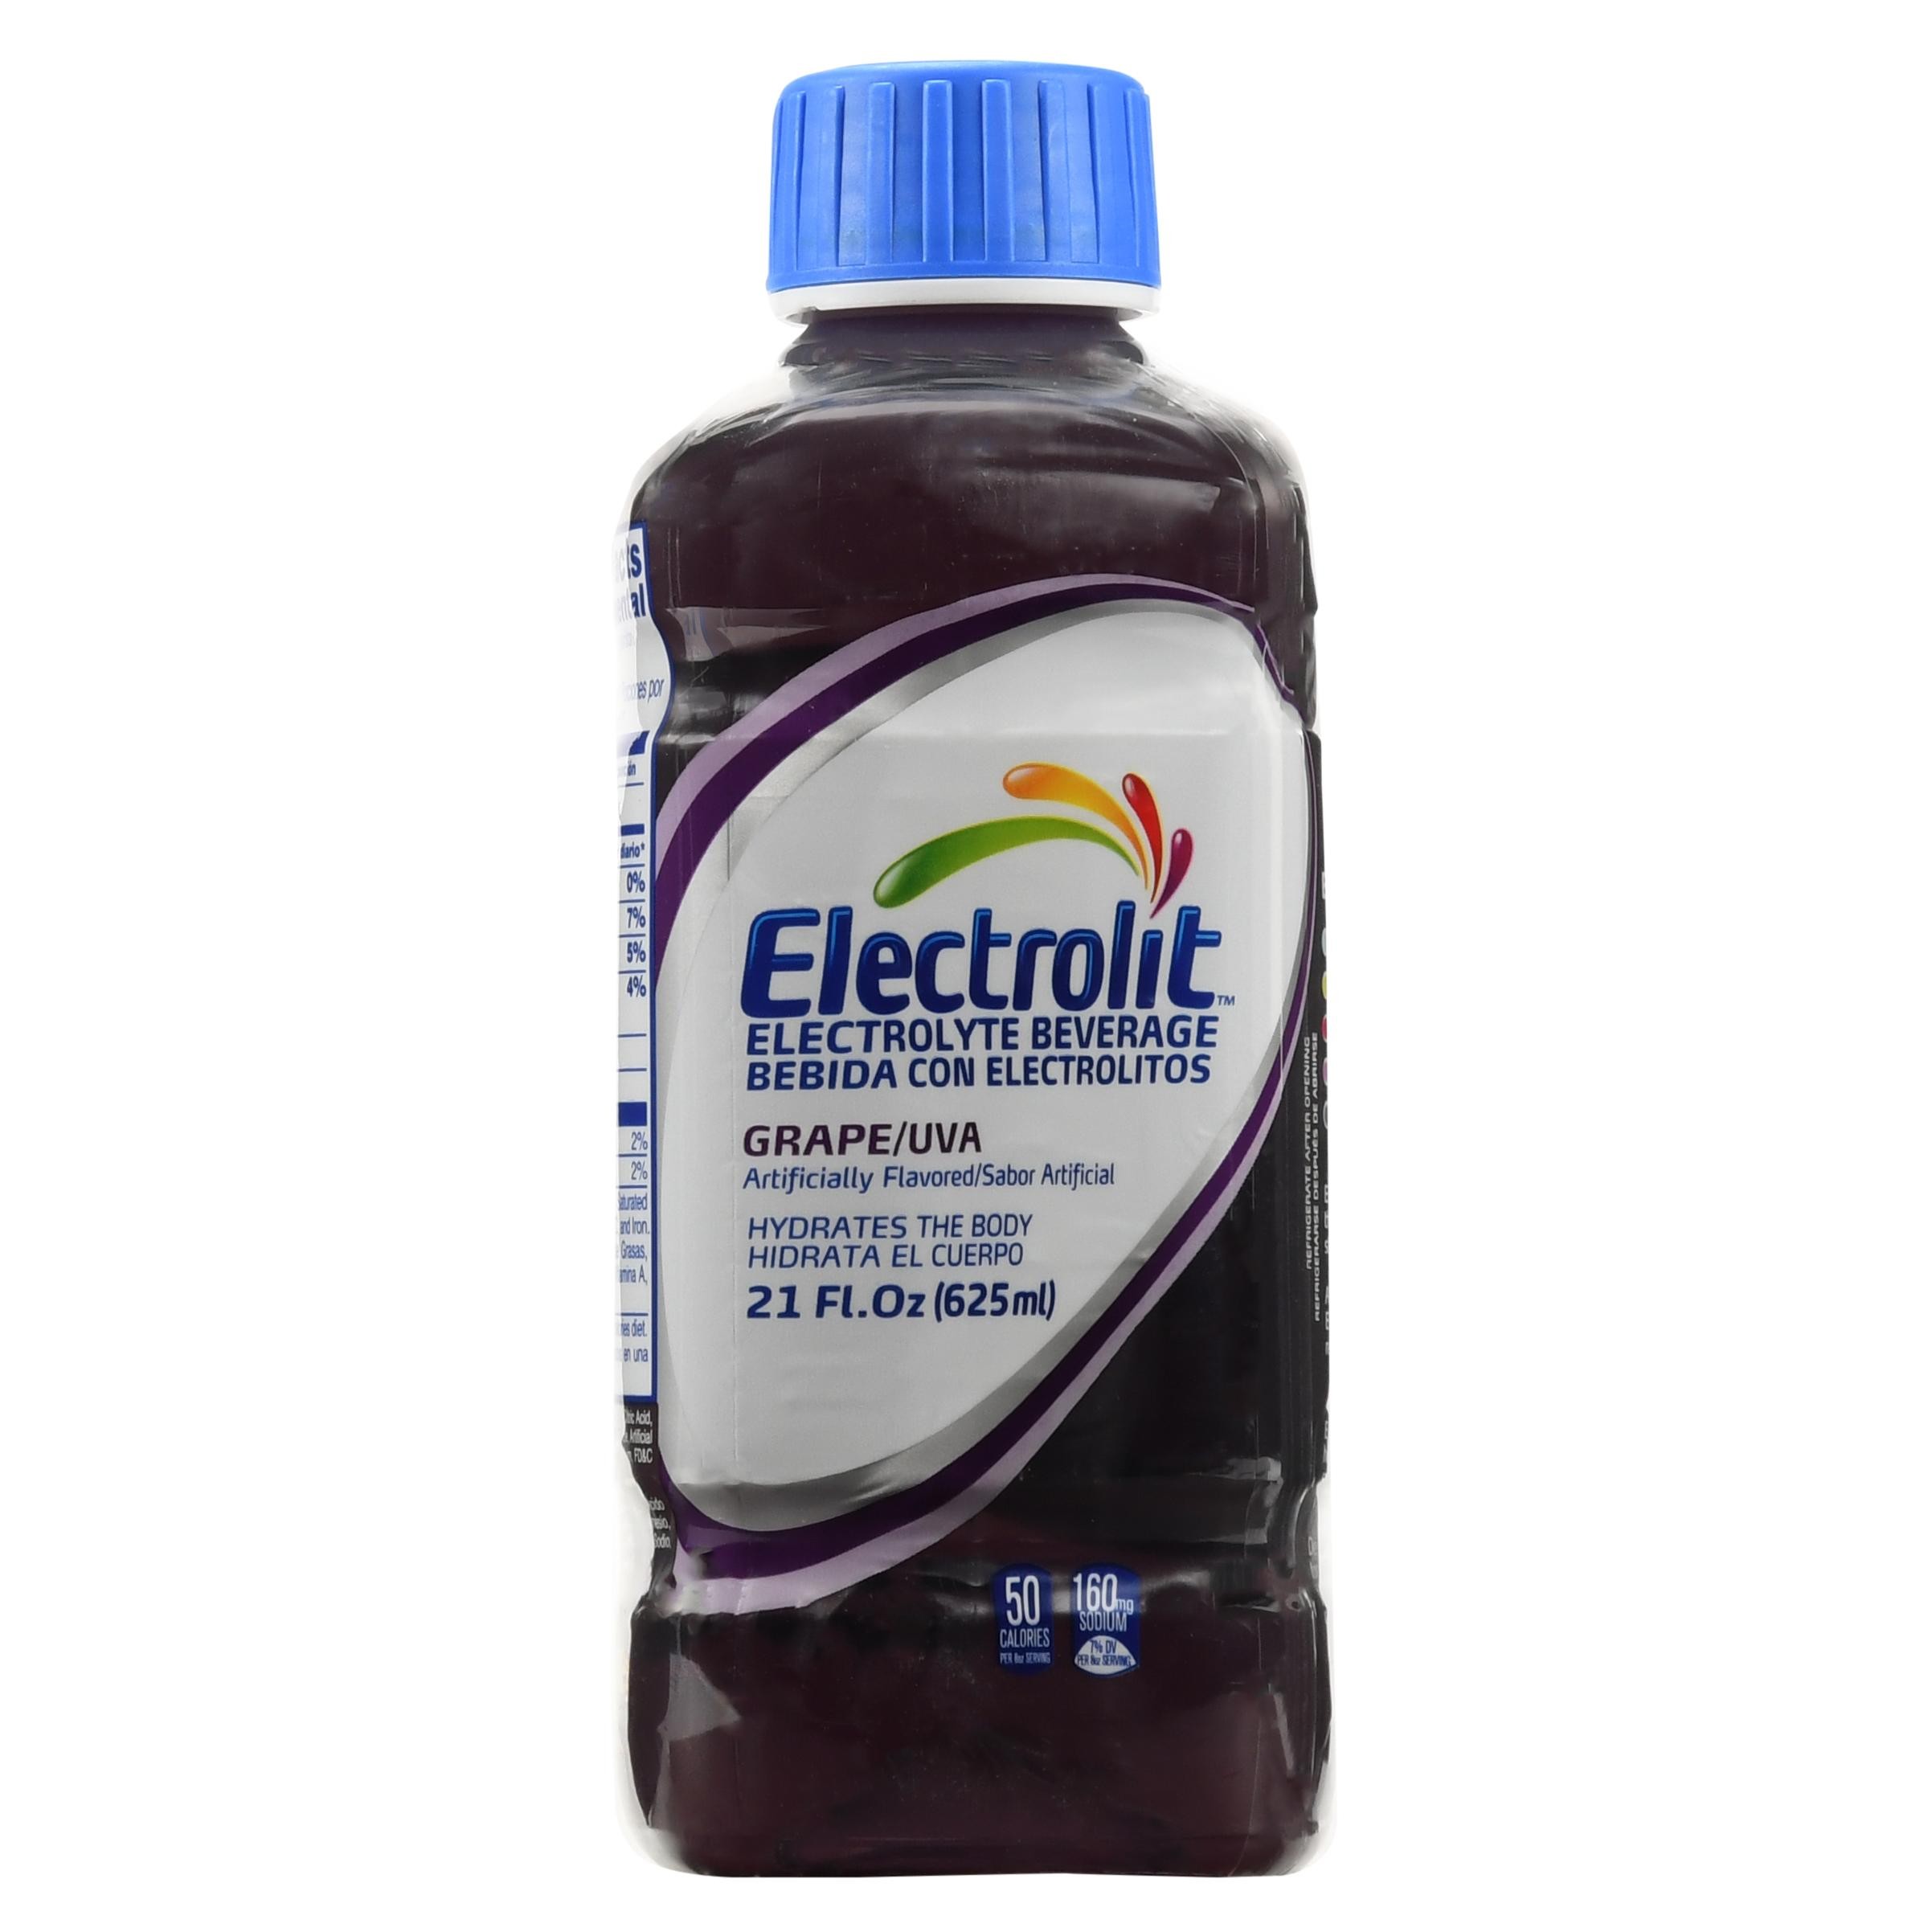 Electrolit Grape 21oz